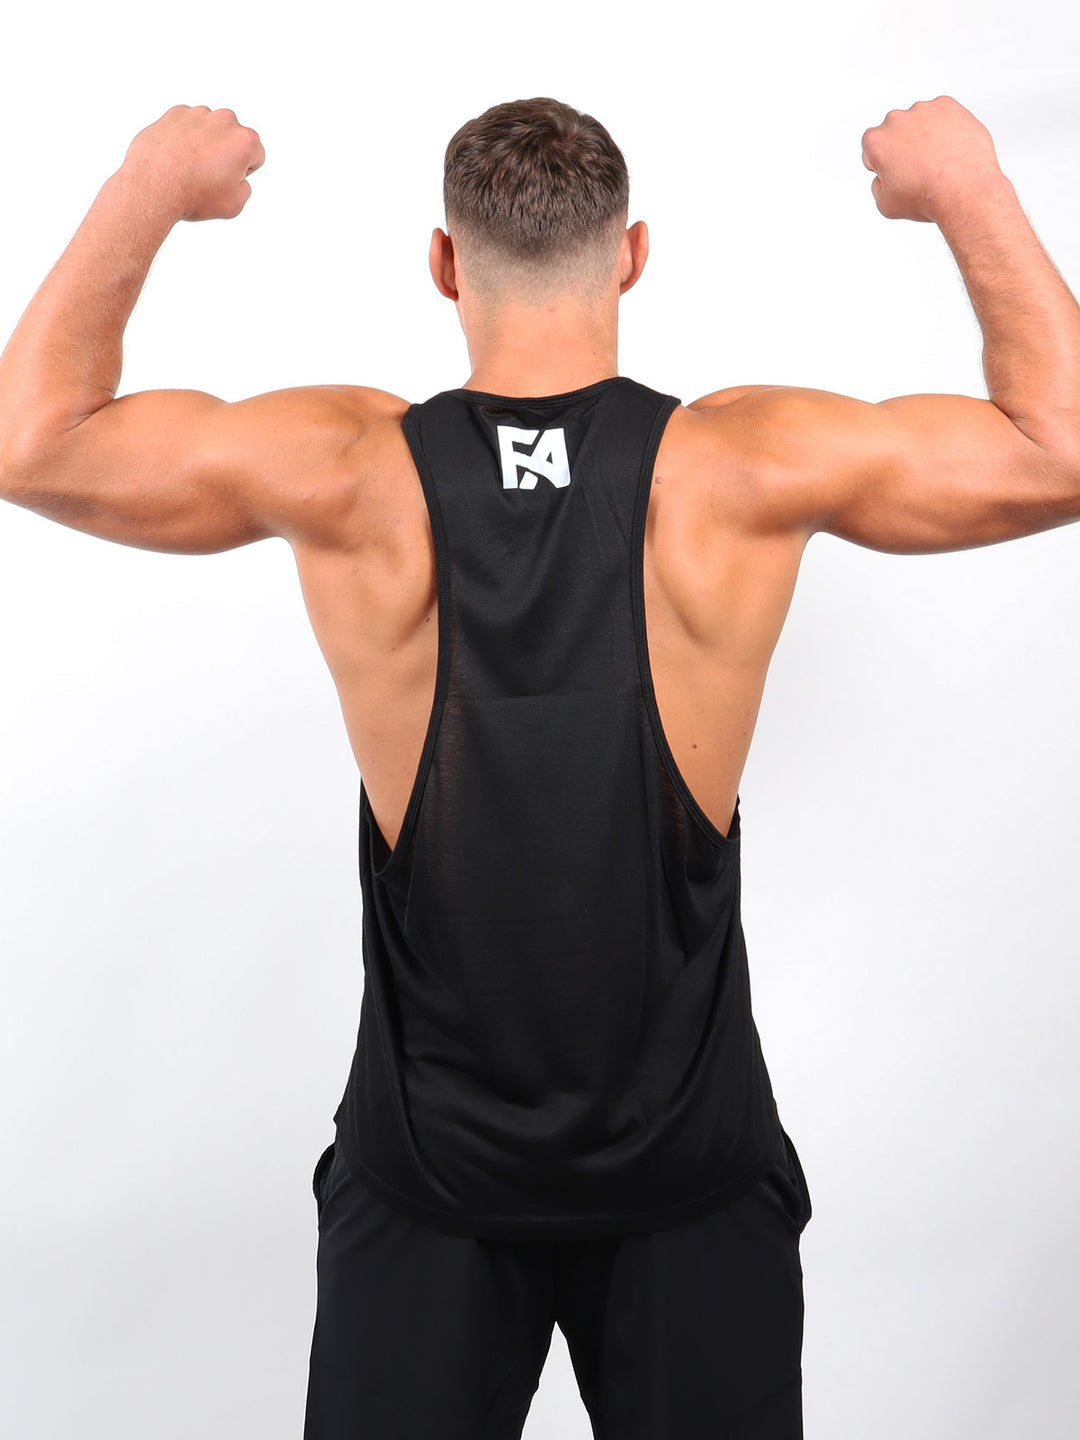 FA - Brasil Edition Samurai – Muscle Shirt – Unisex